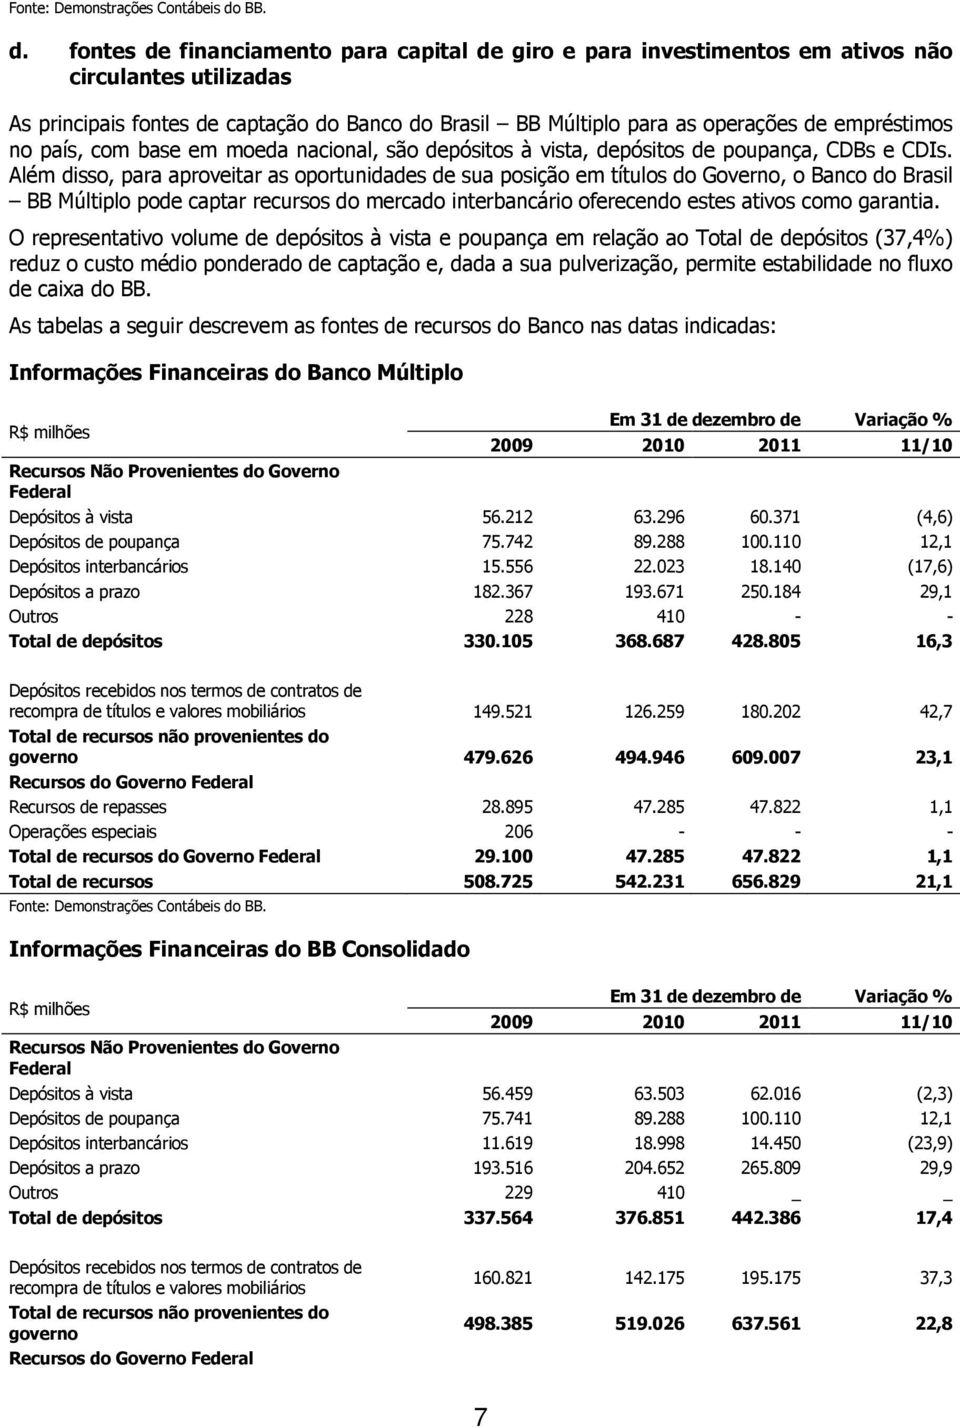 fontes de financiamento para capital de giro e para investimentos em ativos não circulantes utilizadas As principais fontes de captação do Banco do Brasil BB Múltiplo para as operações de empréstimos